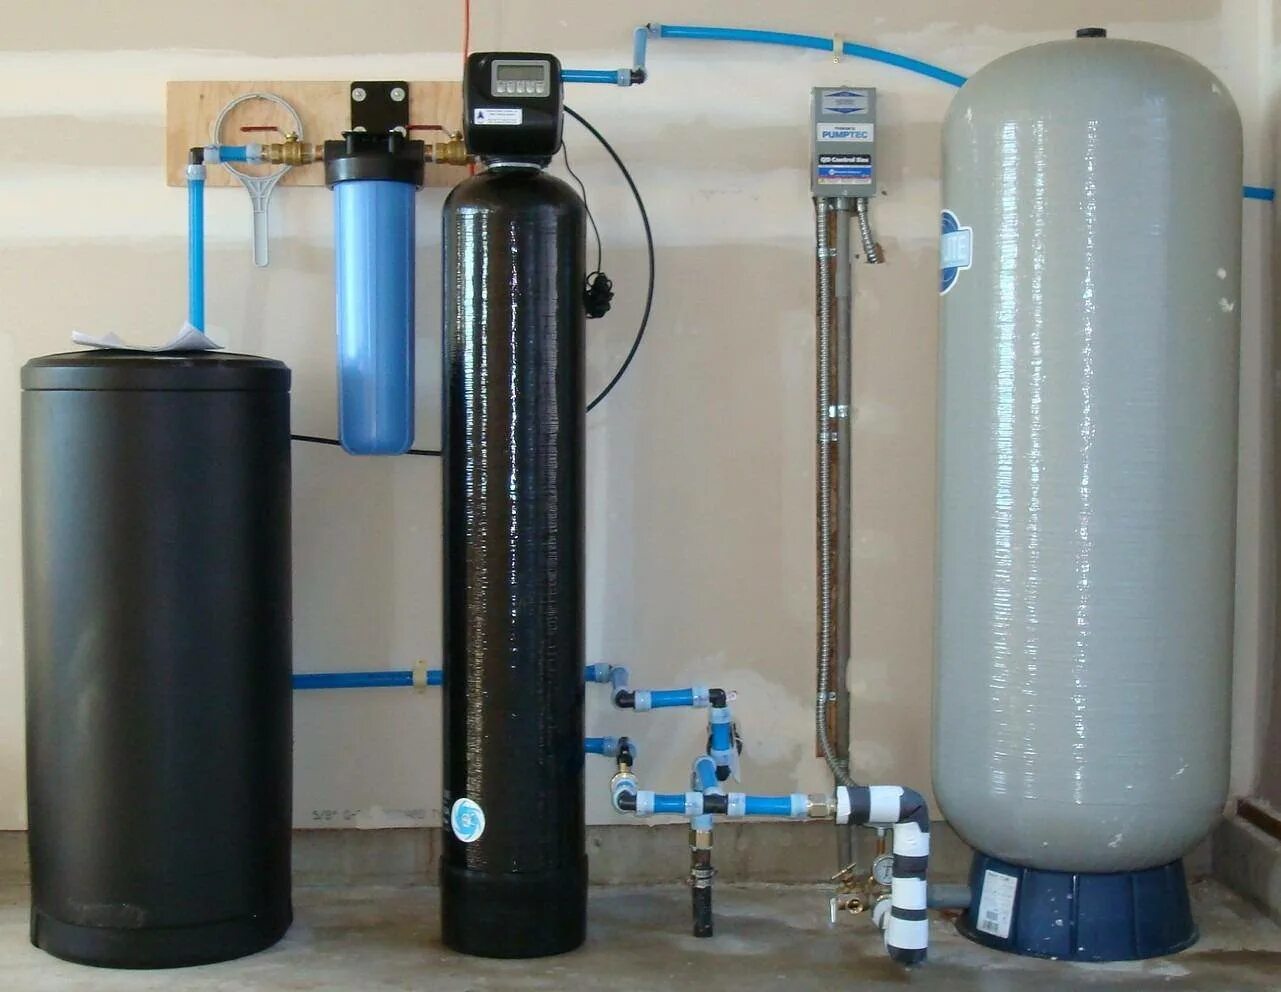 Фильтр обезжелезивания воды для дачи. Фильтр для воды от железа из скважины vdsm 1354c. Магистральный фильтр обезжелезивание для скважин. Softener фильтр для воды. Для умягчения жесткой воды